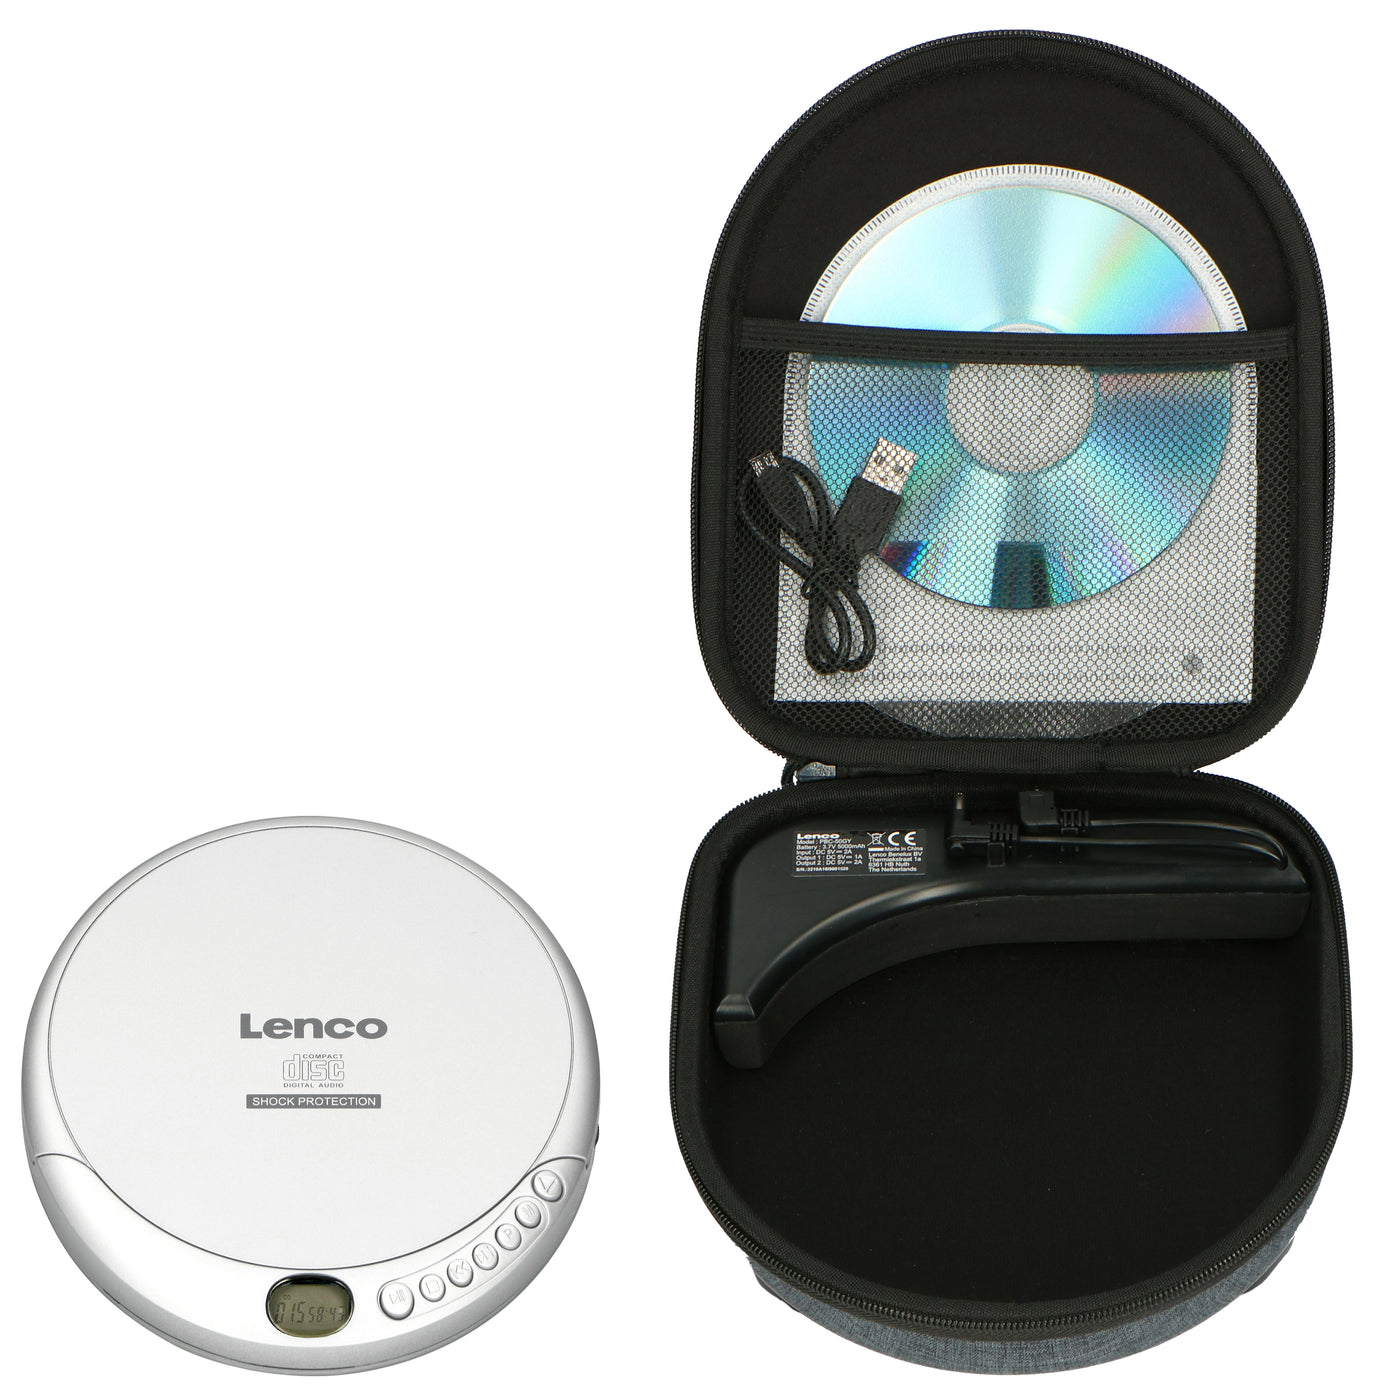 Lenco CD-201SI+PBC-50GY - Tragbarer CD/MP3-Player mit Anti-Schock-Schutz und praktischer Aufbewahrungstasche mit eingebauter Powerbank - Silber/Grau